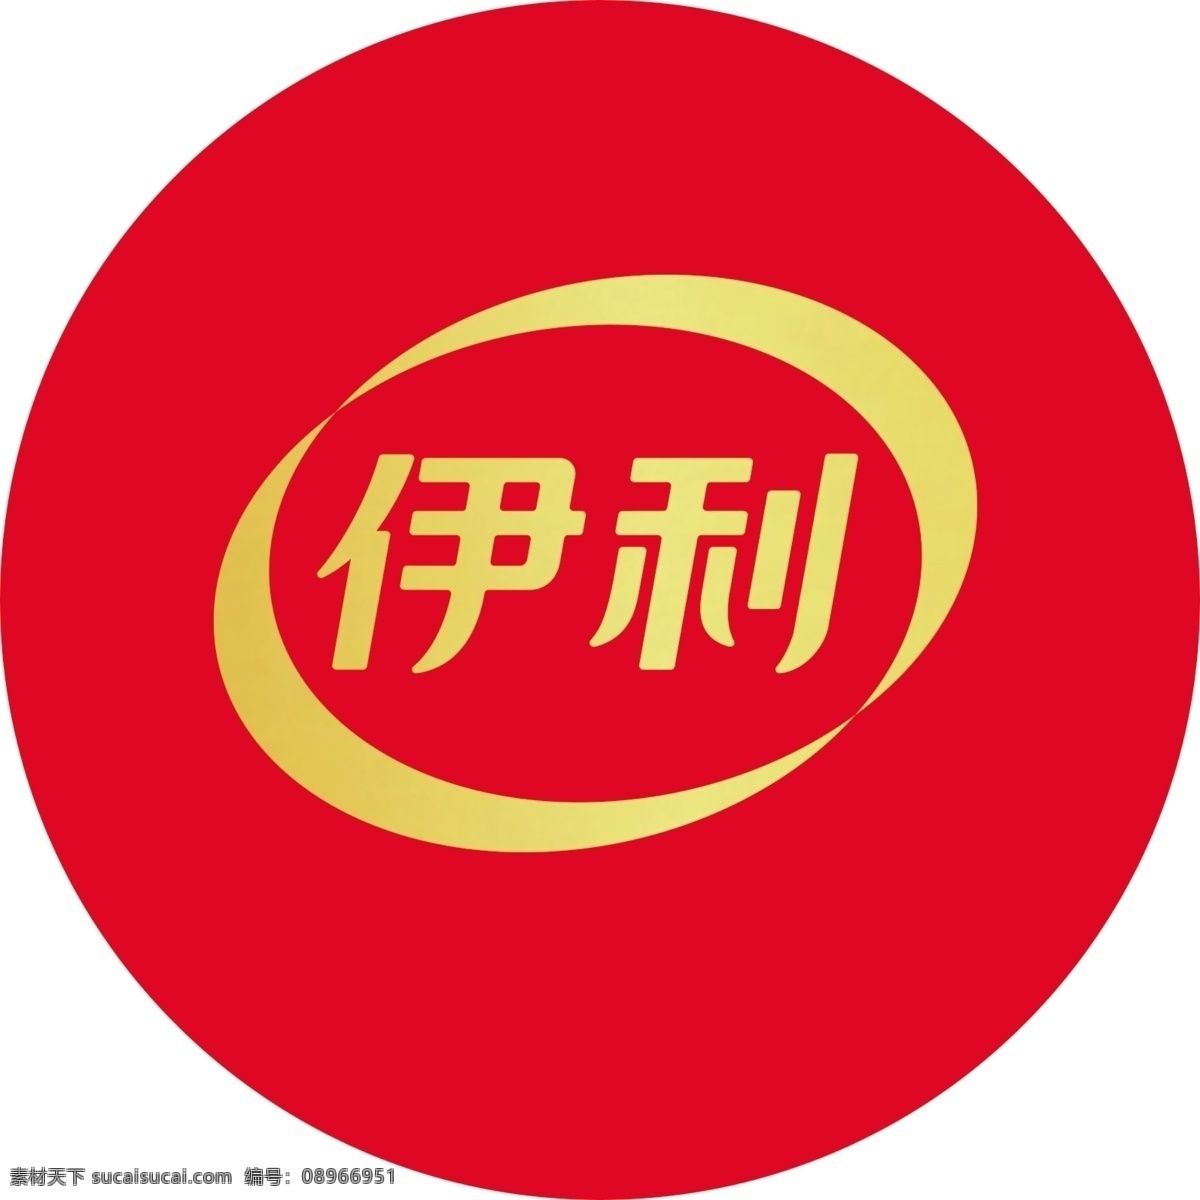 伊利logo 伊利 logo 红色 金色 渐变色 圆形